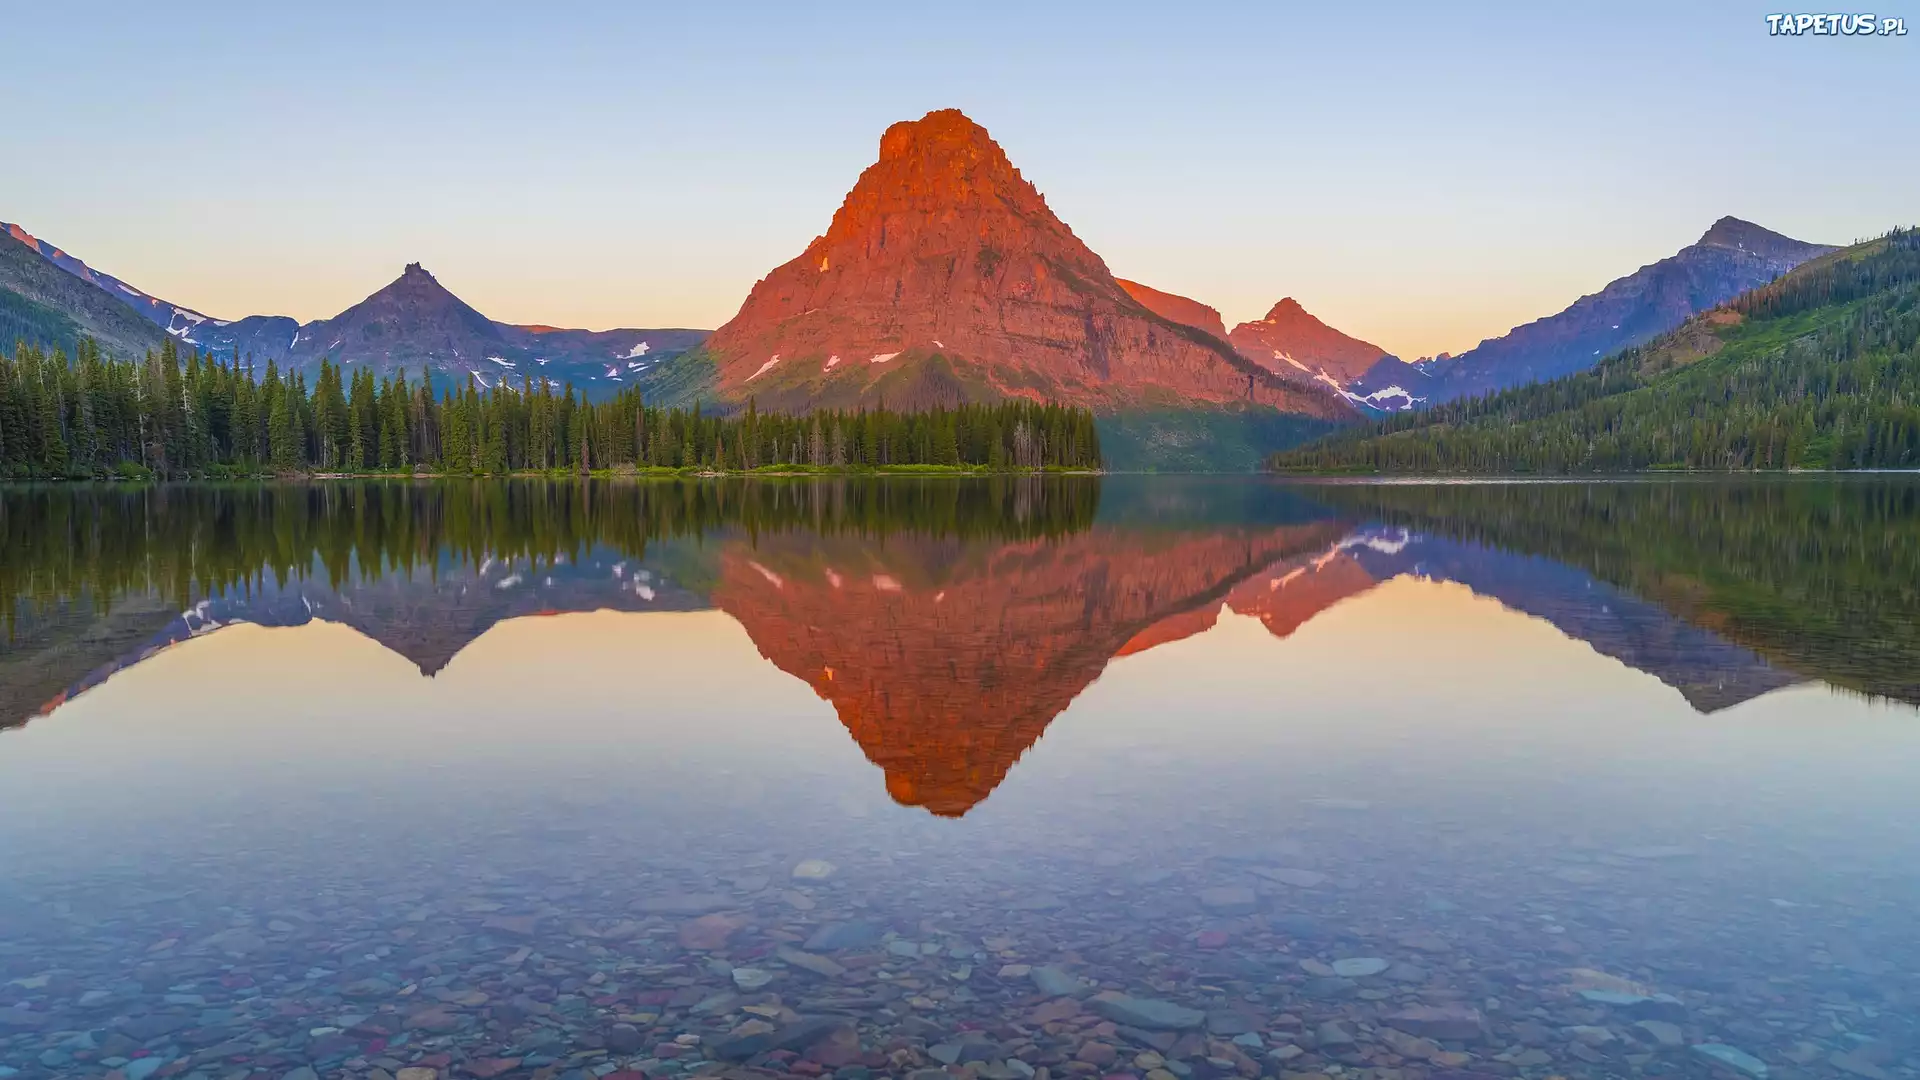 Jezioro, Two Medicine Lake, Park Narodowy Glacier, Góry, Sinopah Mountain, Drzewa, Kamienie, Odbicie, Stan Montana, Stany Zjednoczone